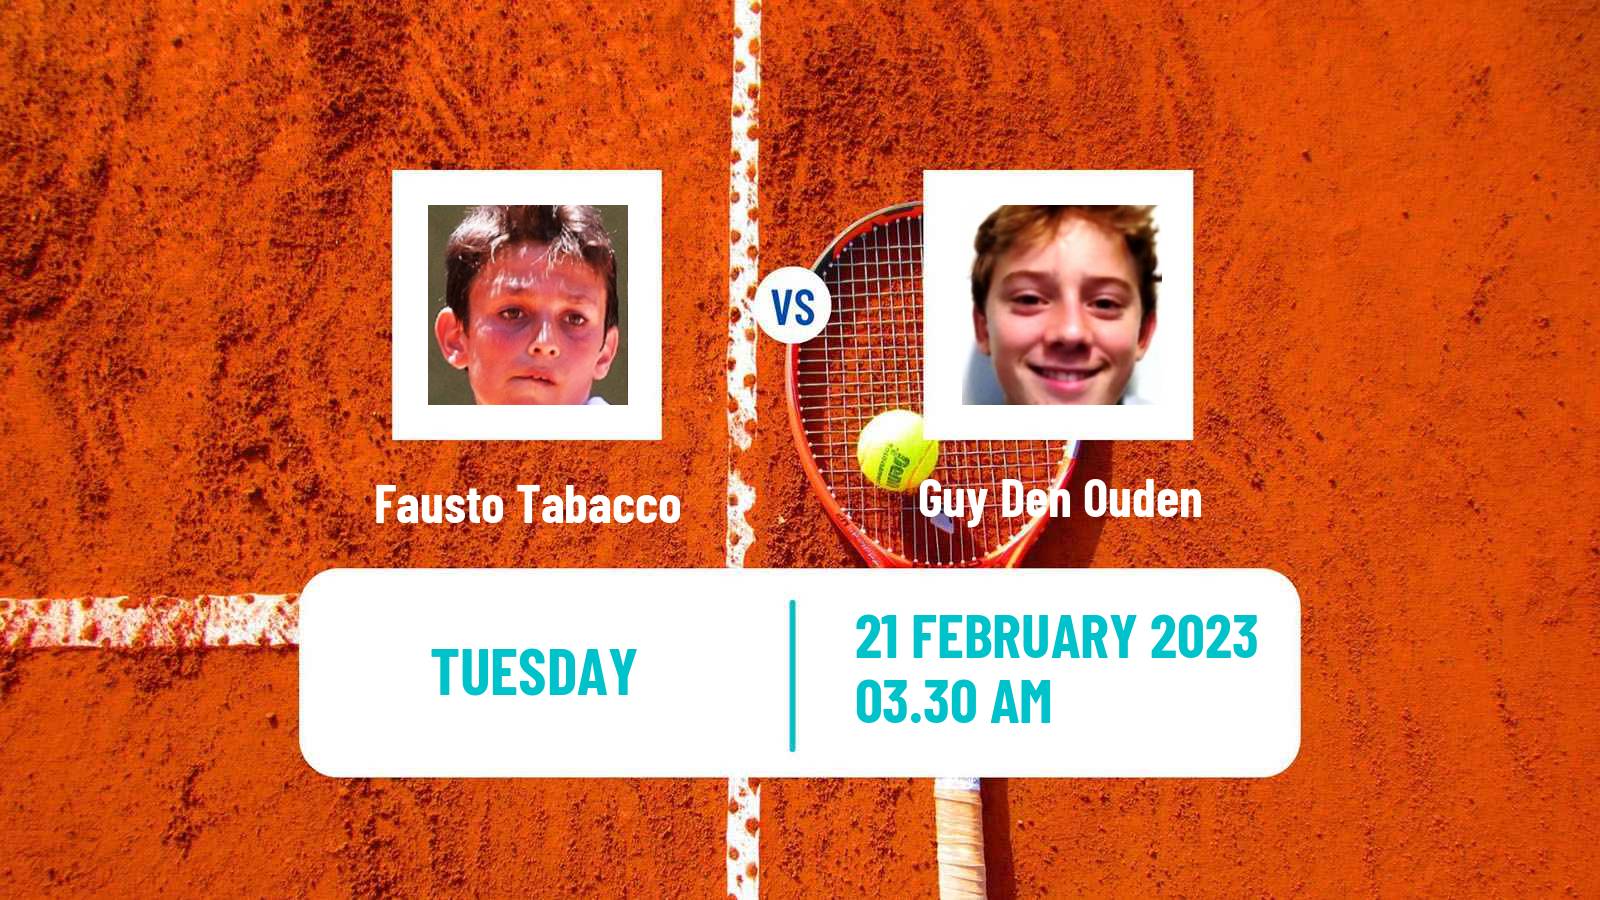 Tennis ITF Tournaments Fausto Tabacco - Guy Den Ouden